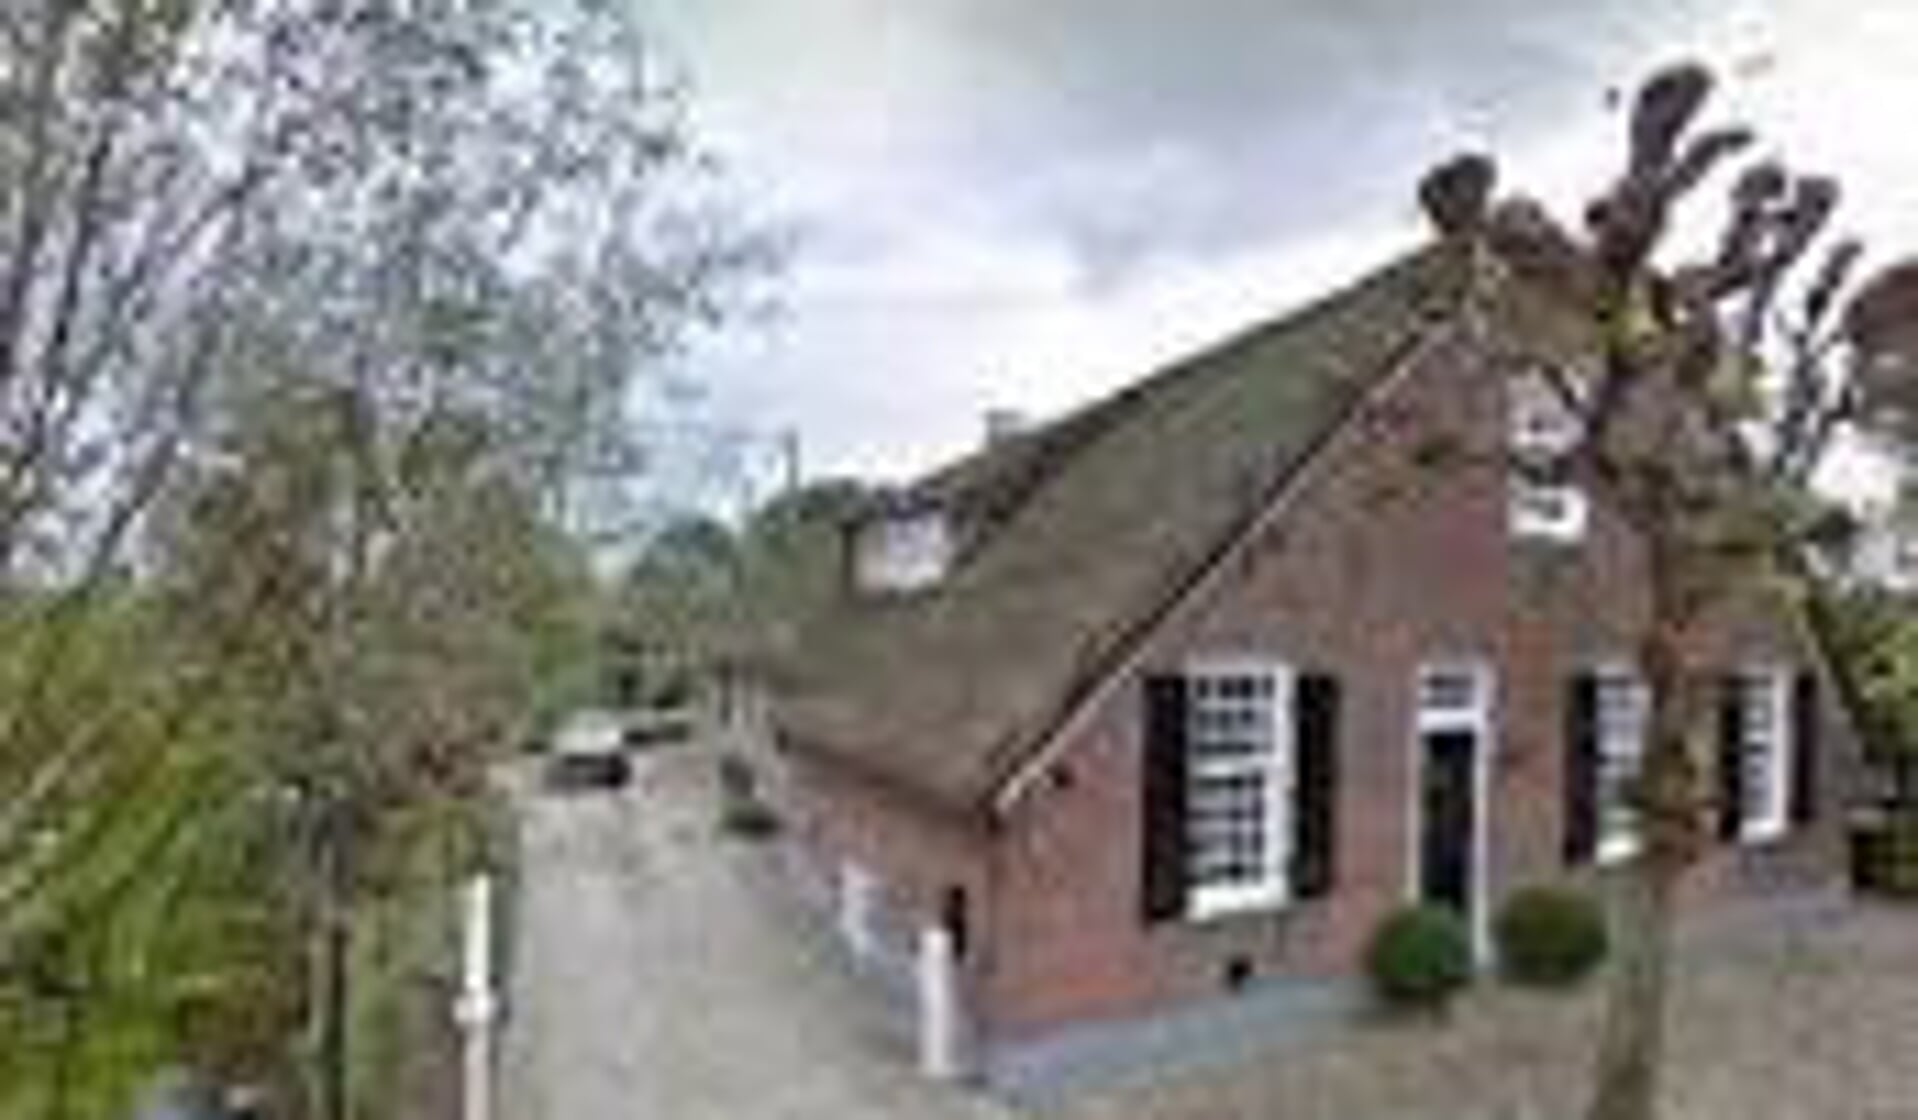 • De woonboerderij van initiatiefnemer Kruiswijk aan de Oost-Vlisterdijk, de locatie waar het landgoed gepland is.